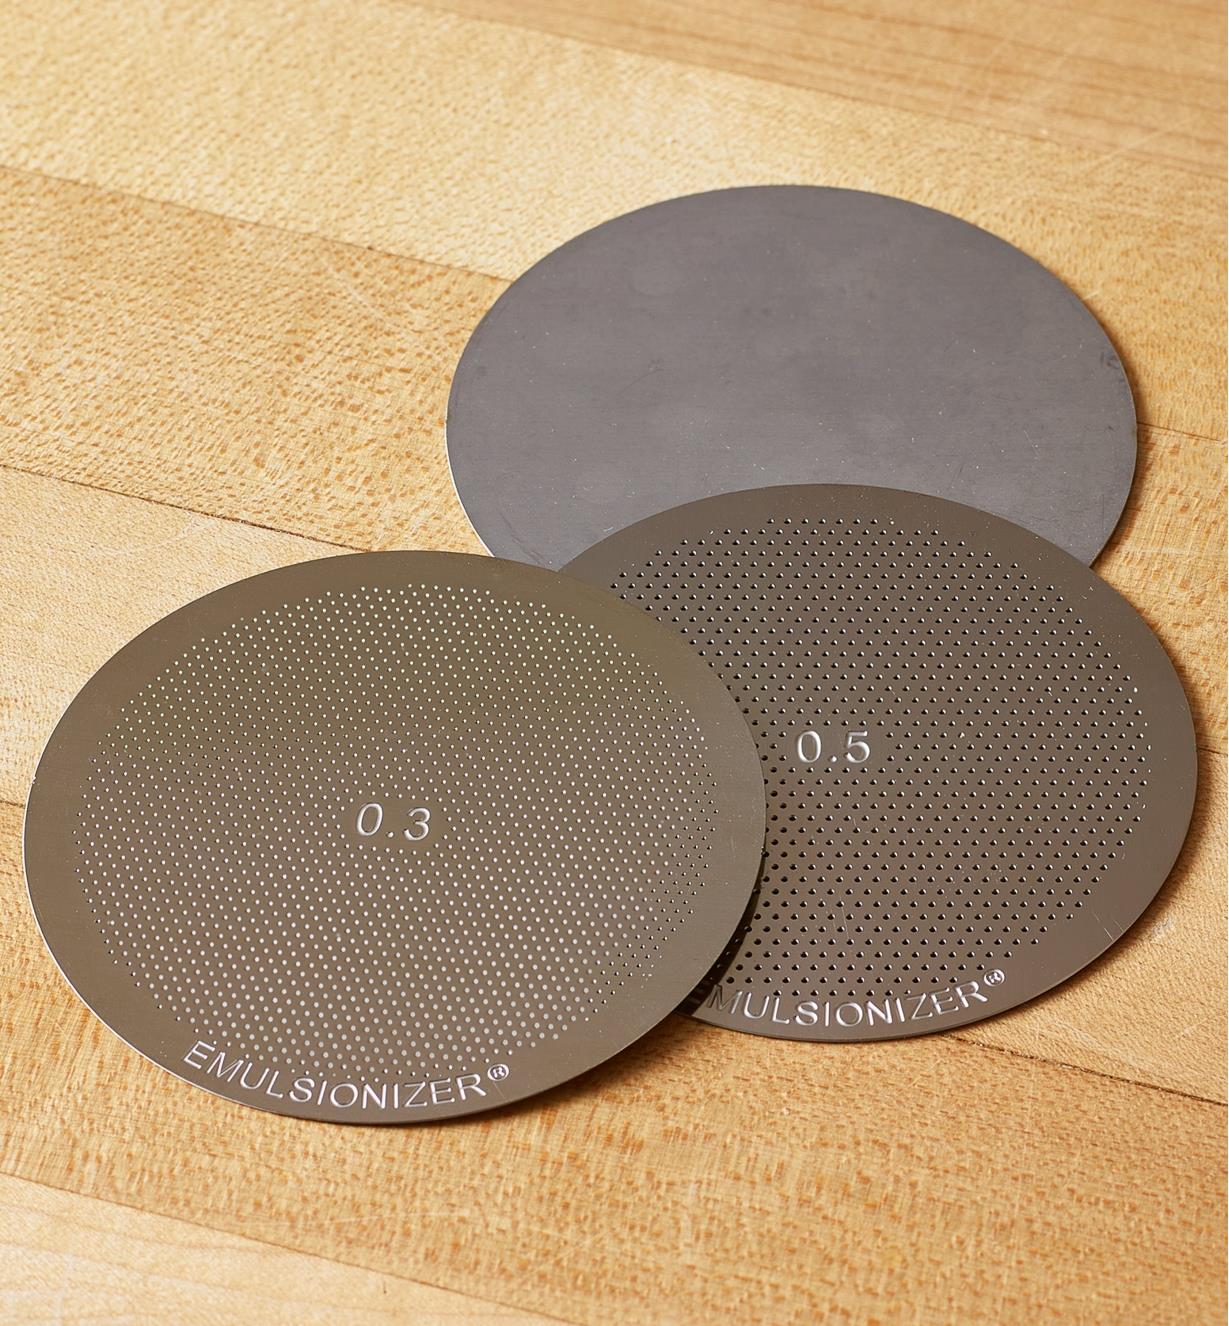 Trois disques en acier inoxydable déposés sur un comptoir.